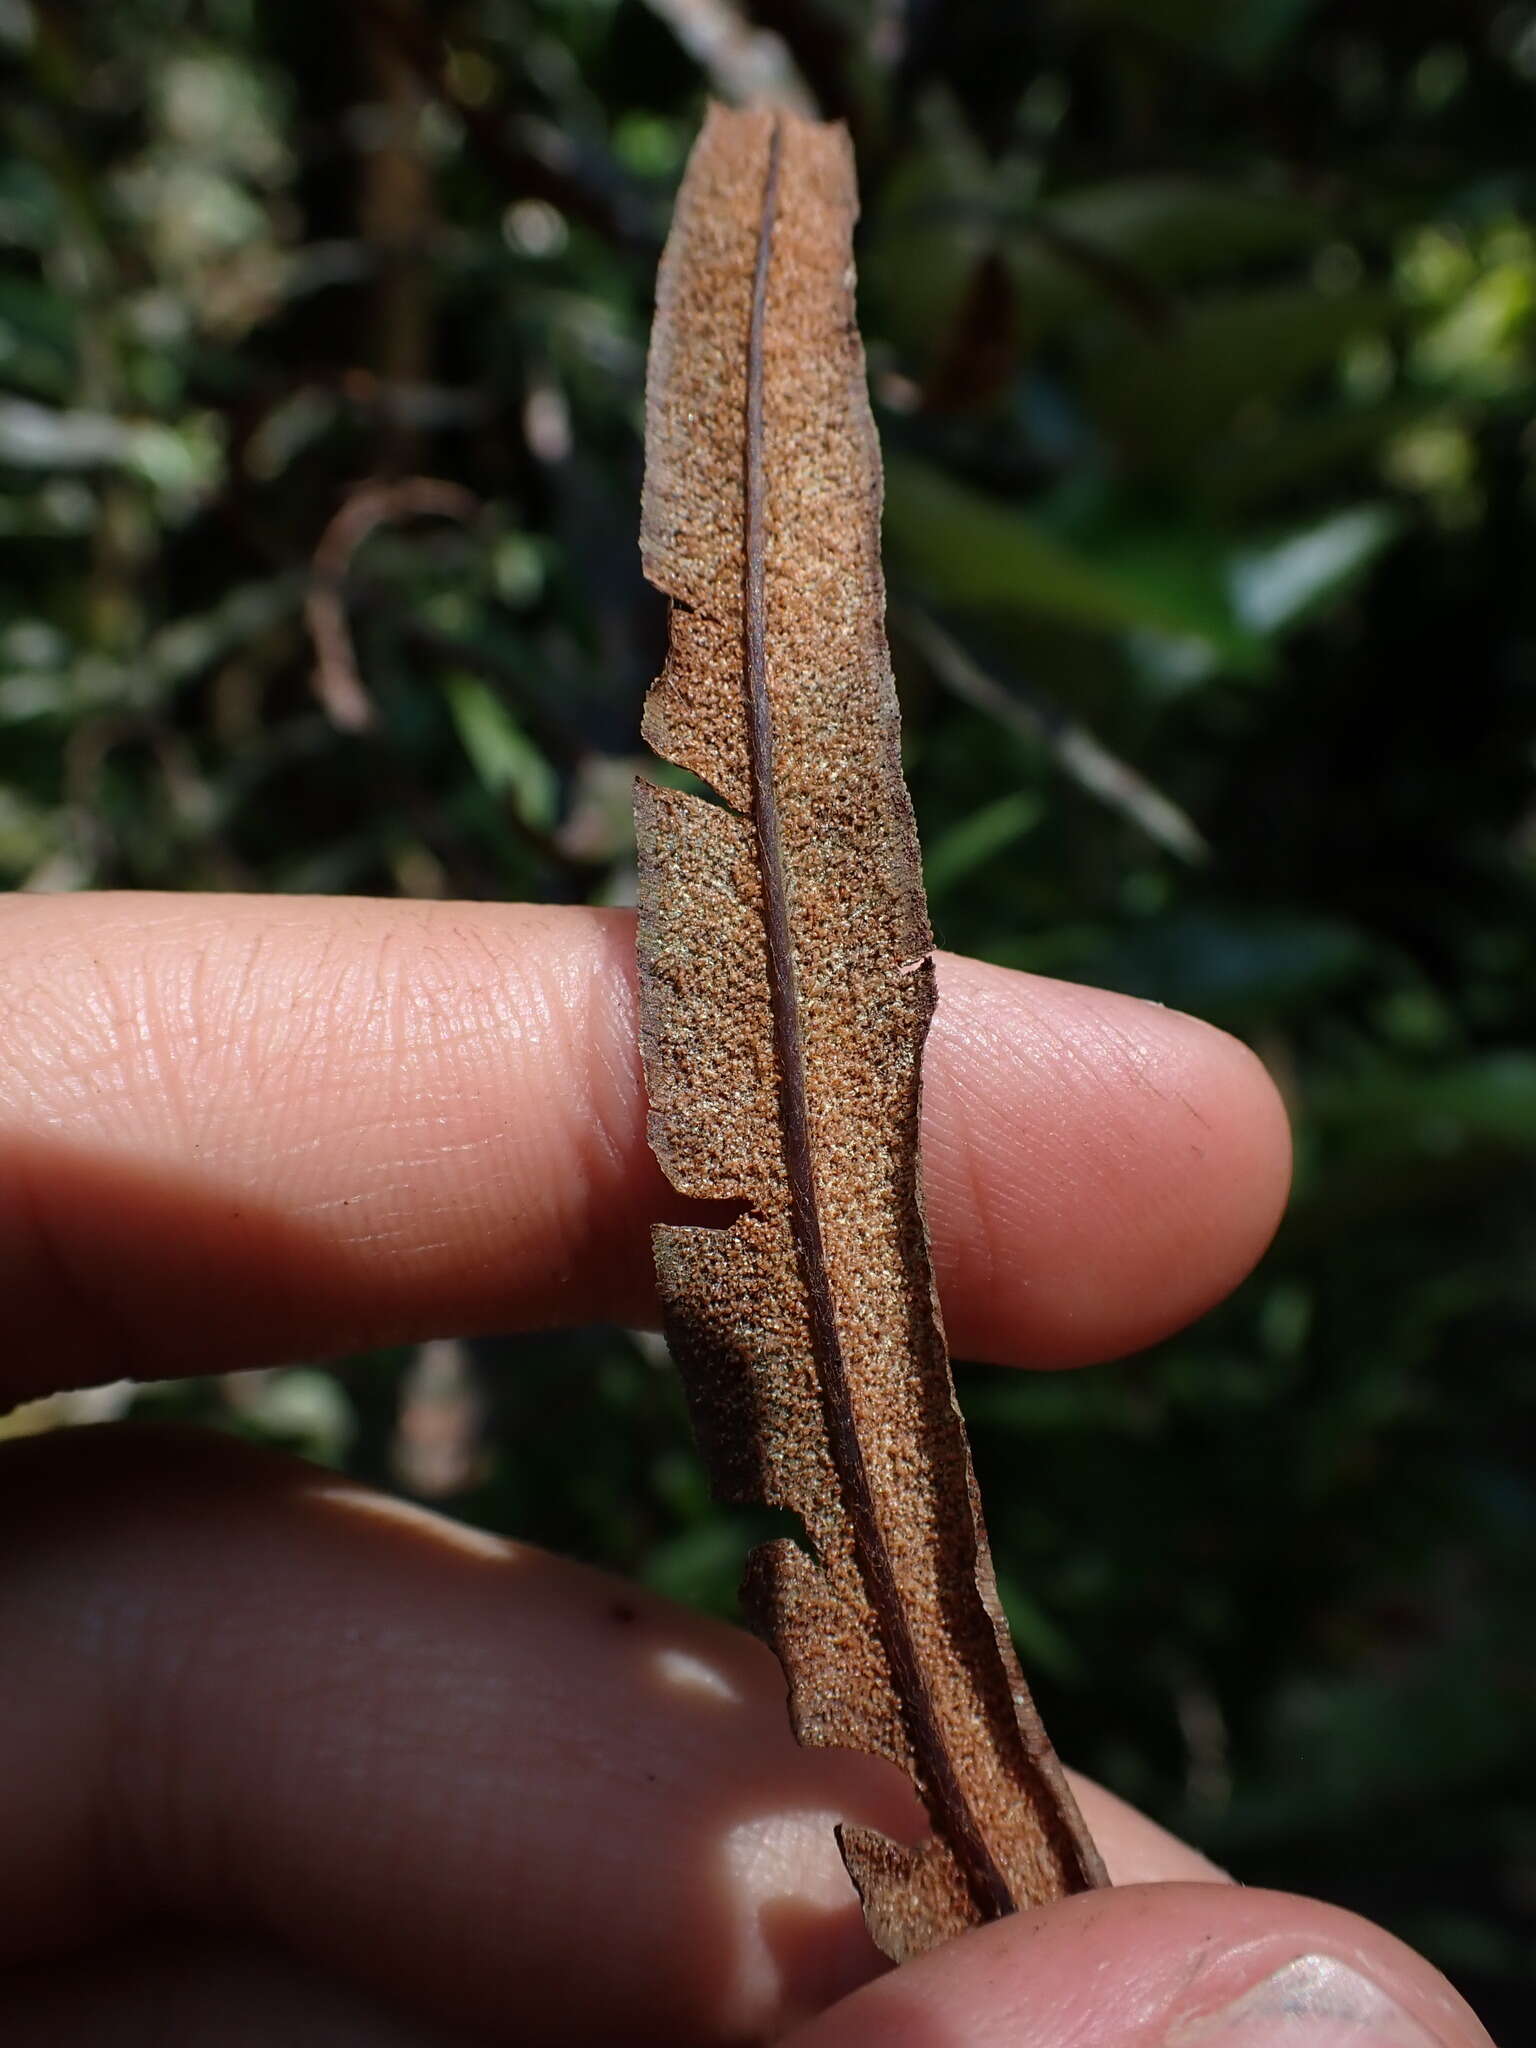 Image de Pityrogramma trifoliata (L.) R. Tryon